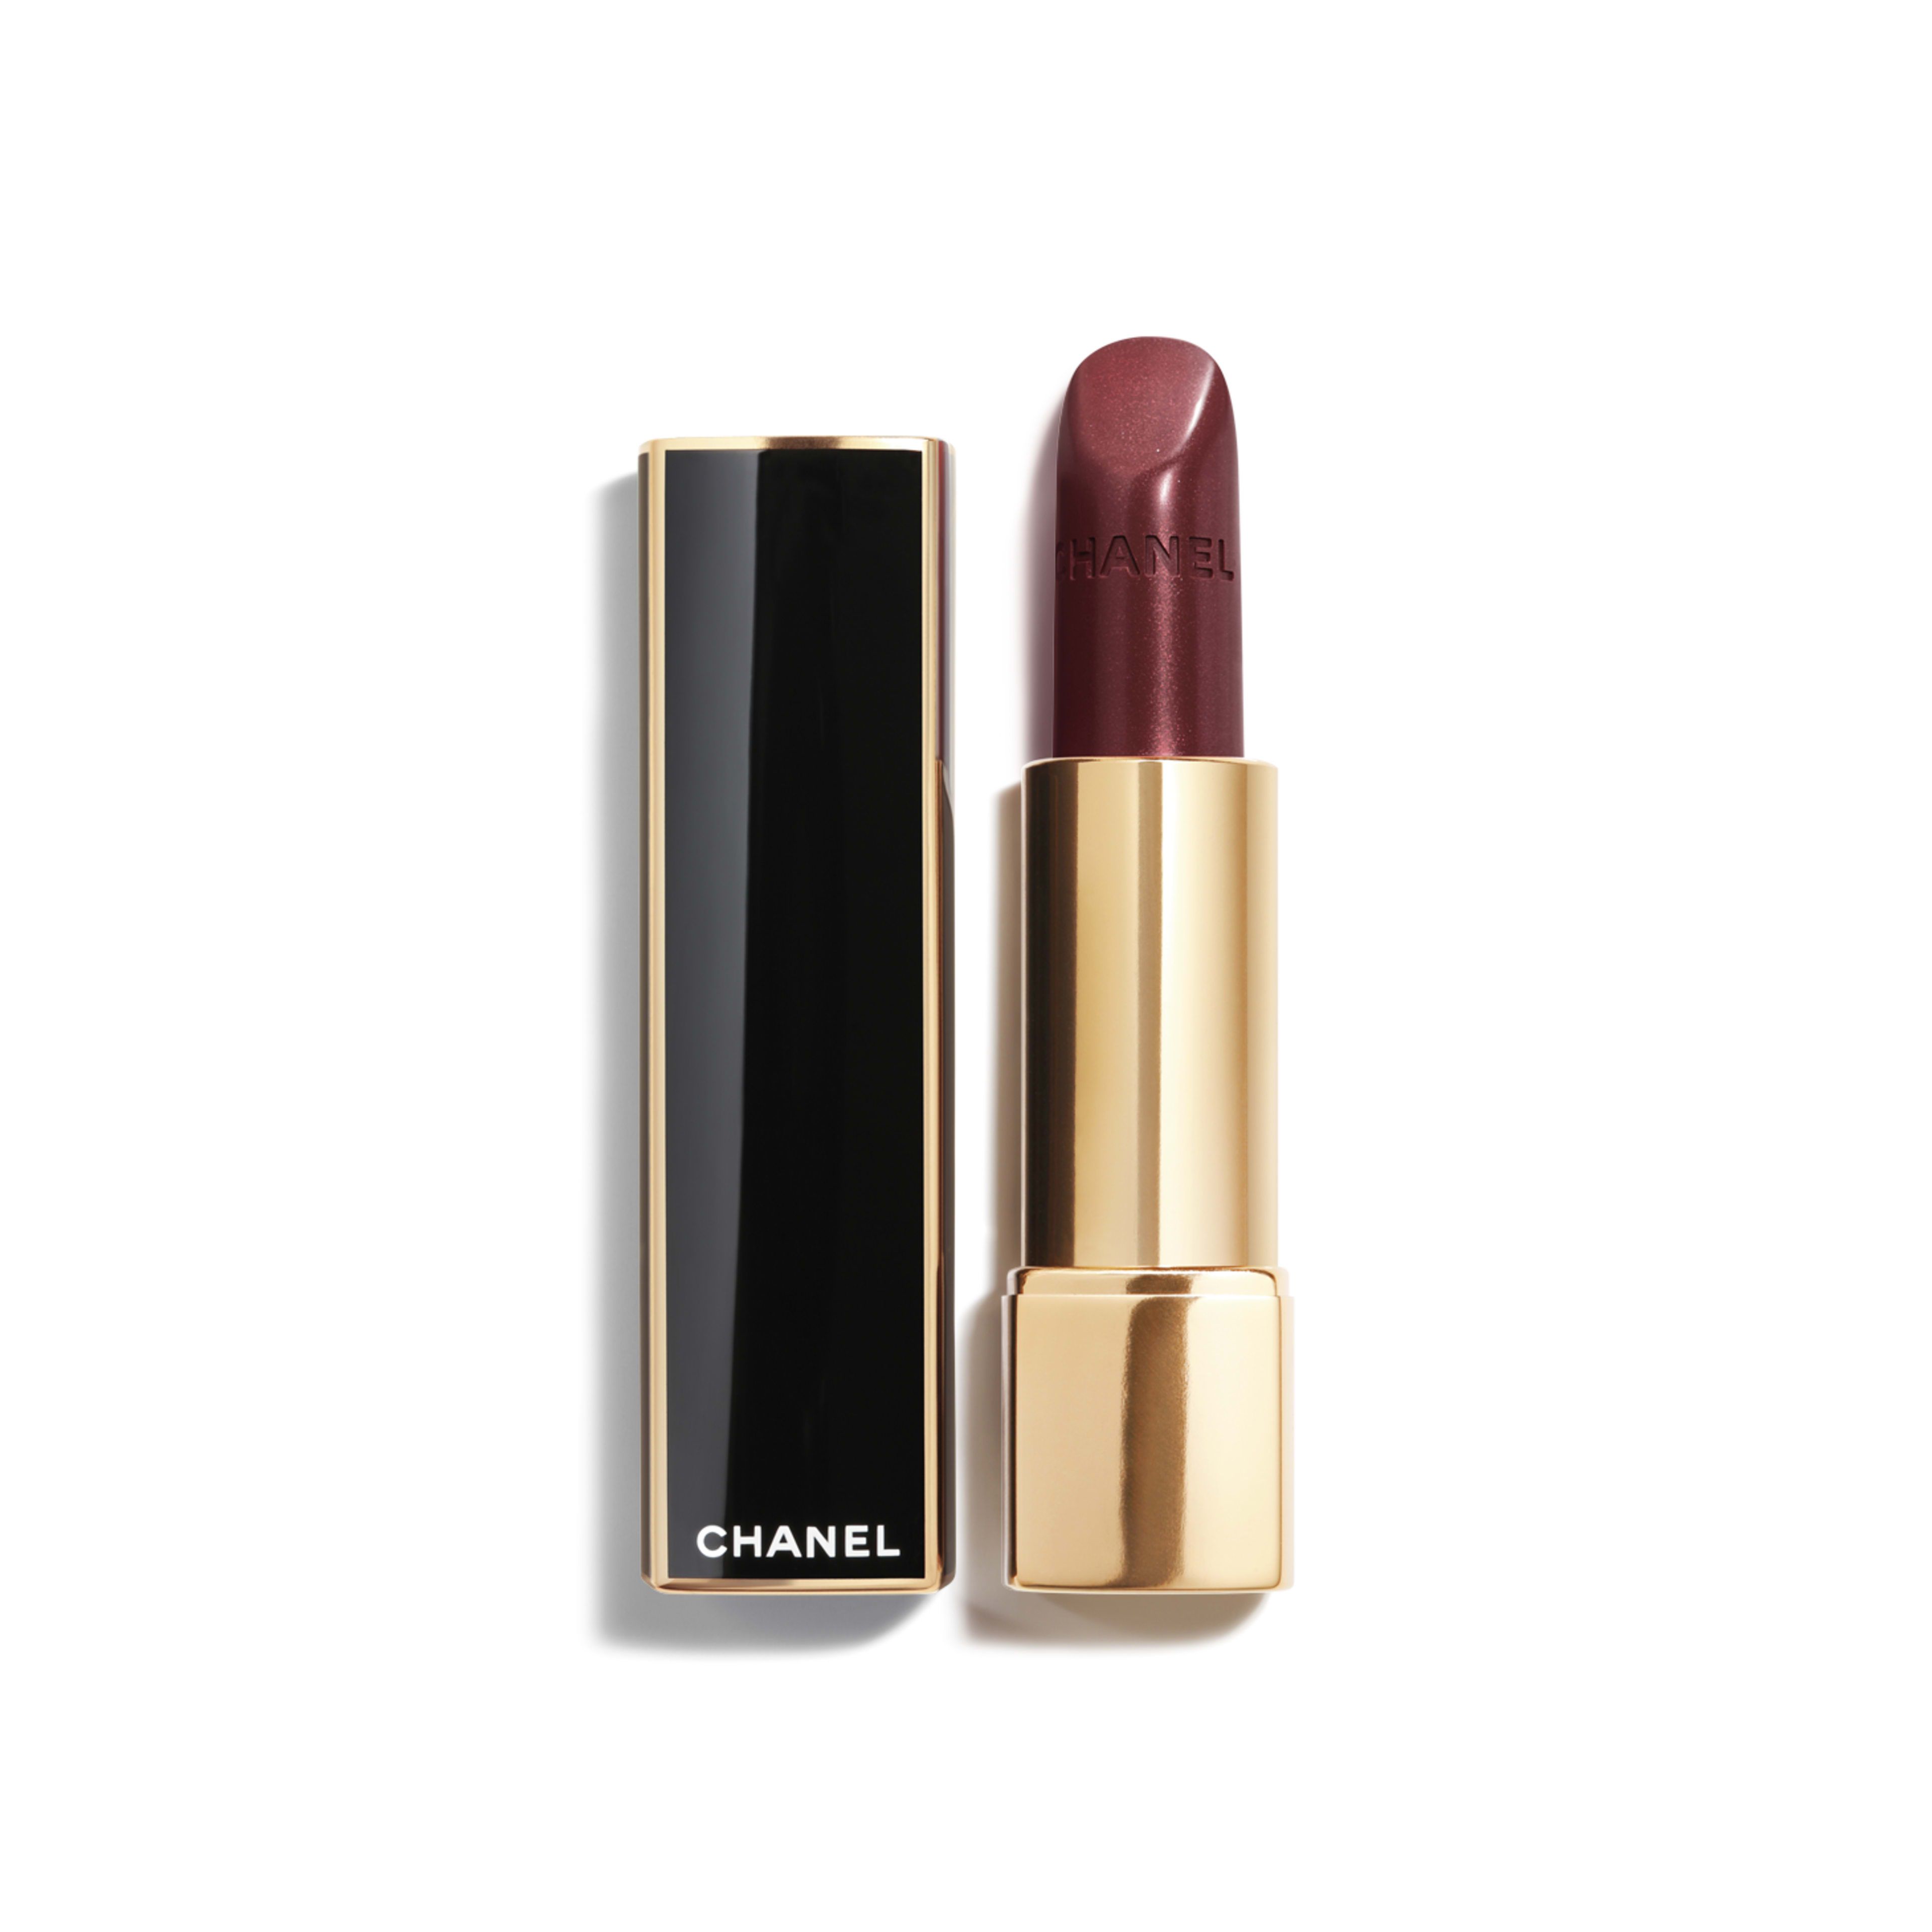 ROUGE ALLURE Luminous Intense Lip Colour 137 - POURPRE D'OR | CHANEL | Chanel, Inc. (US)